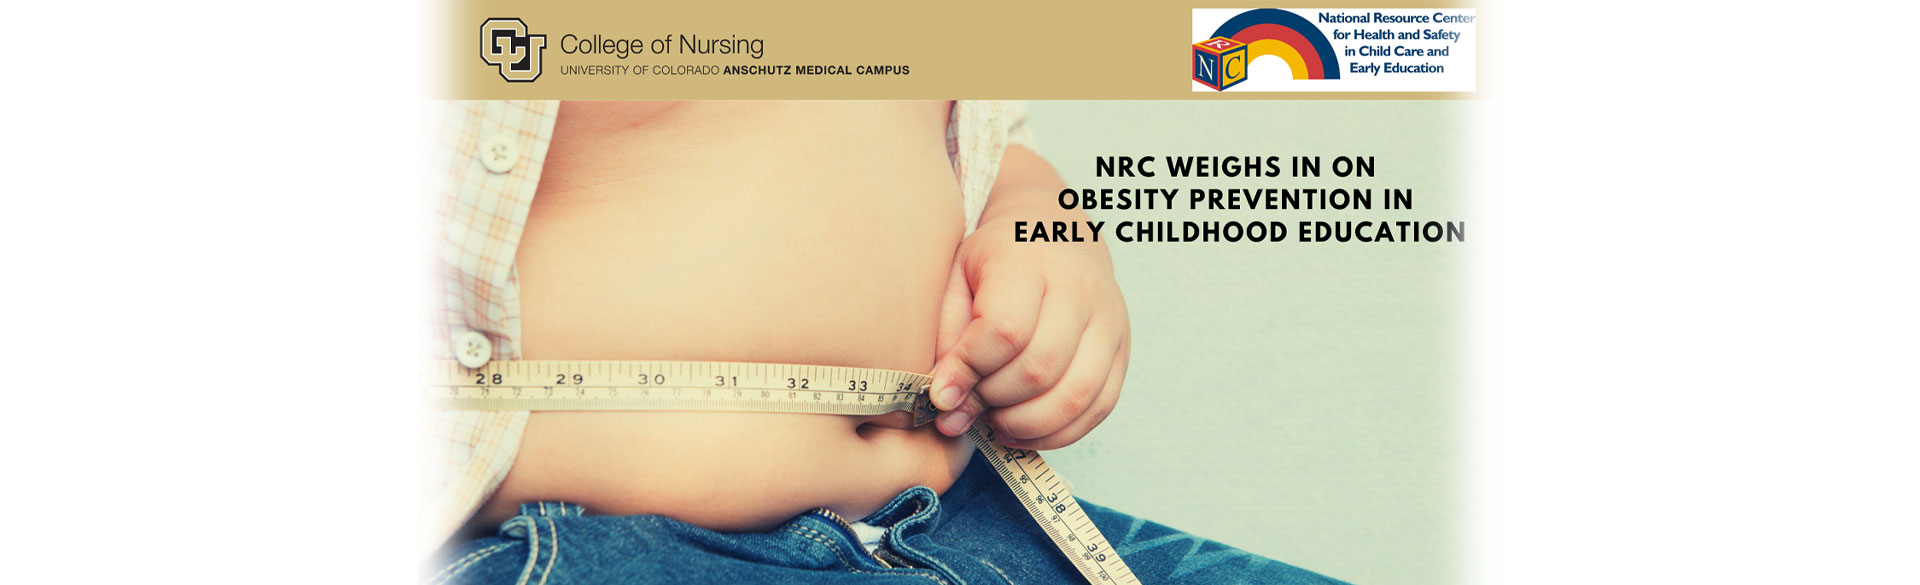 NRC对儿童早期教育中的肥胖预防进行了评估万博手机版下载